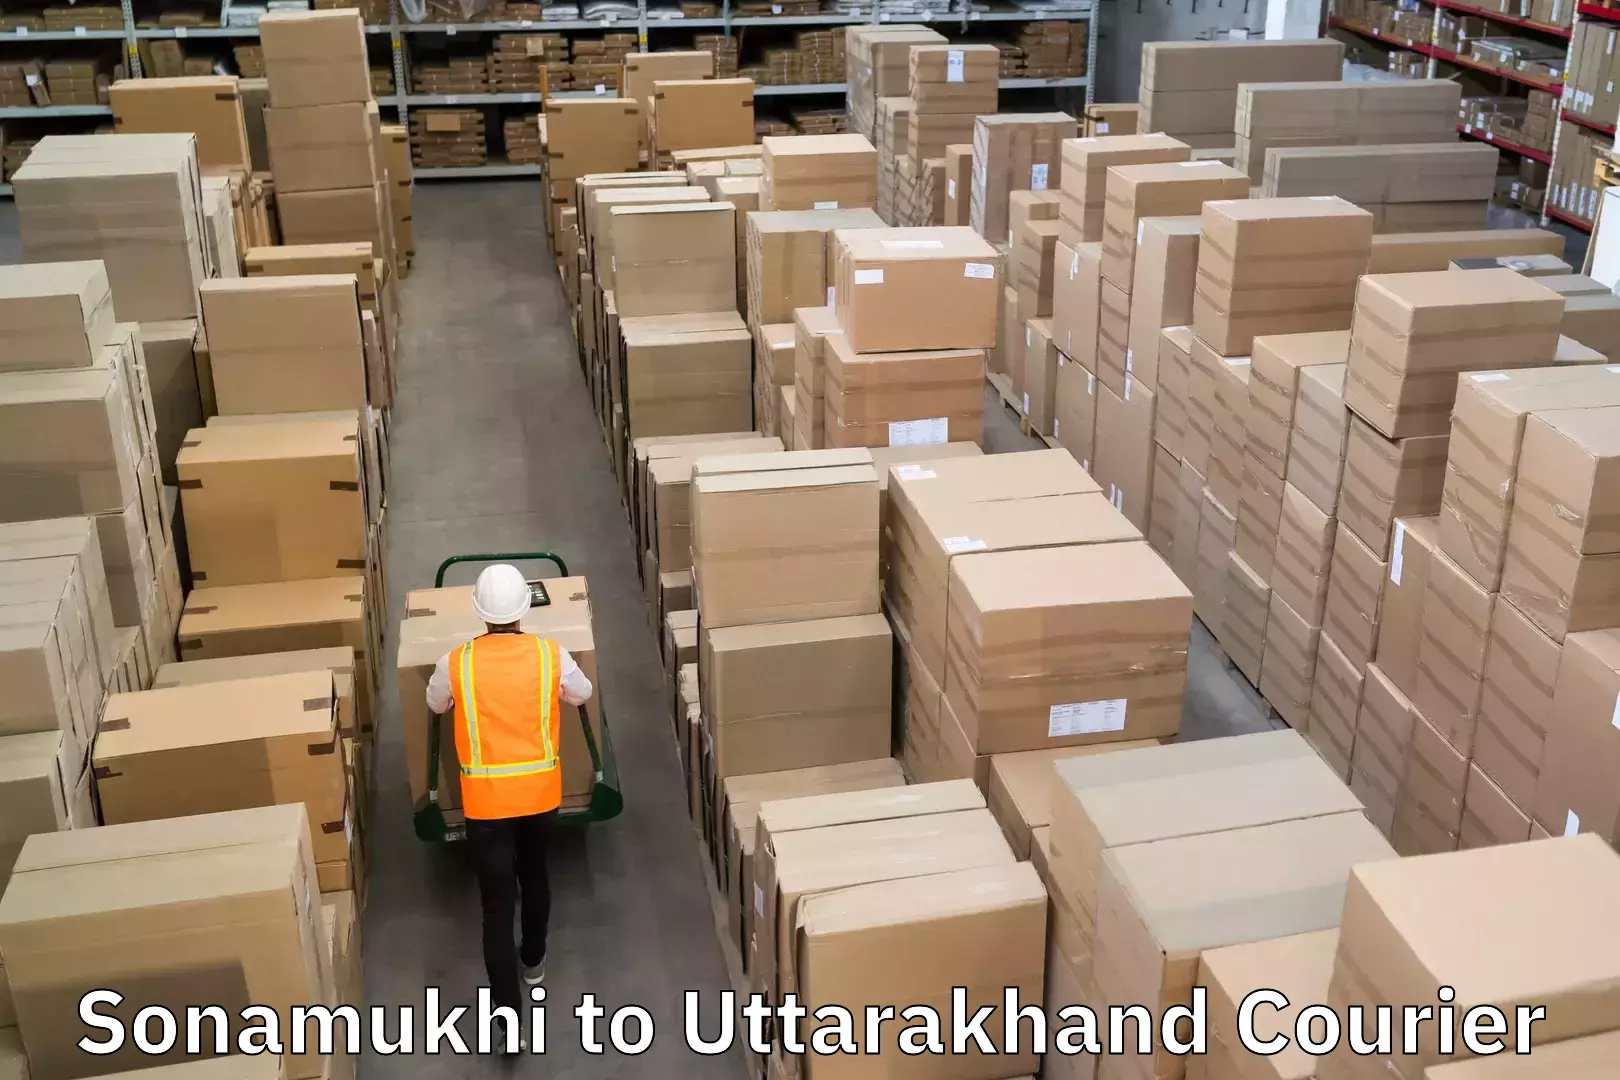 Global freight services Sonamukhi to Uttarakhand